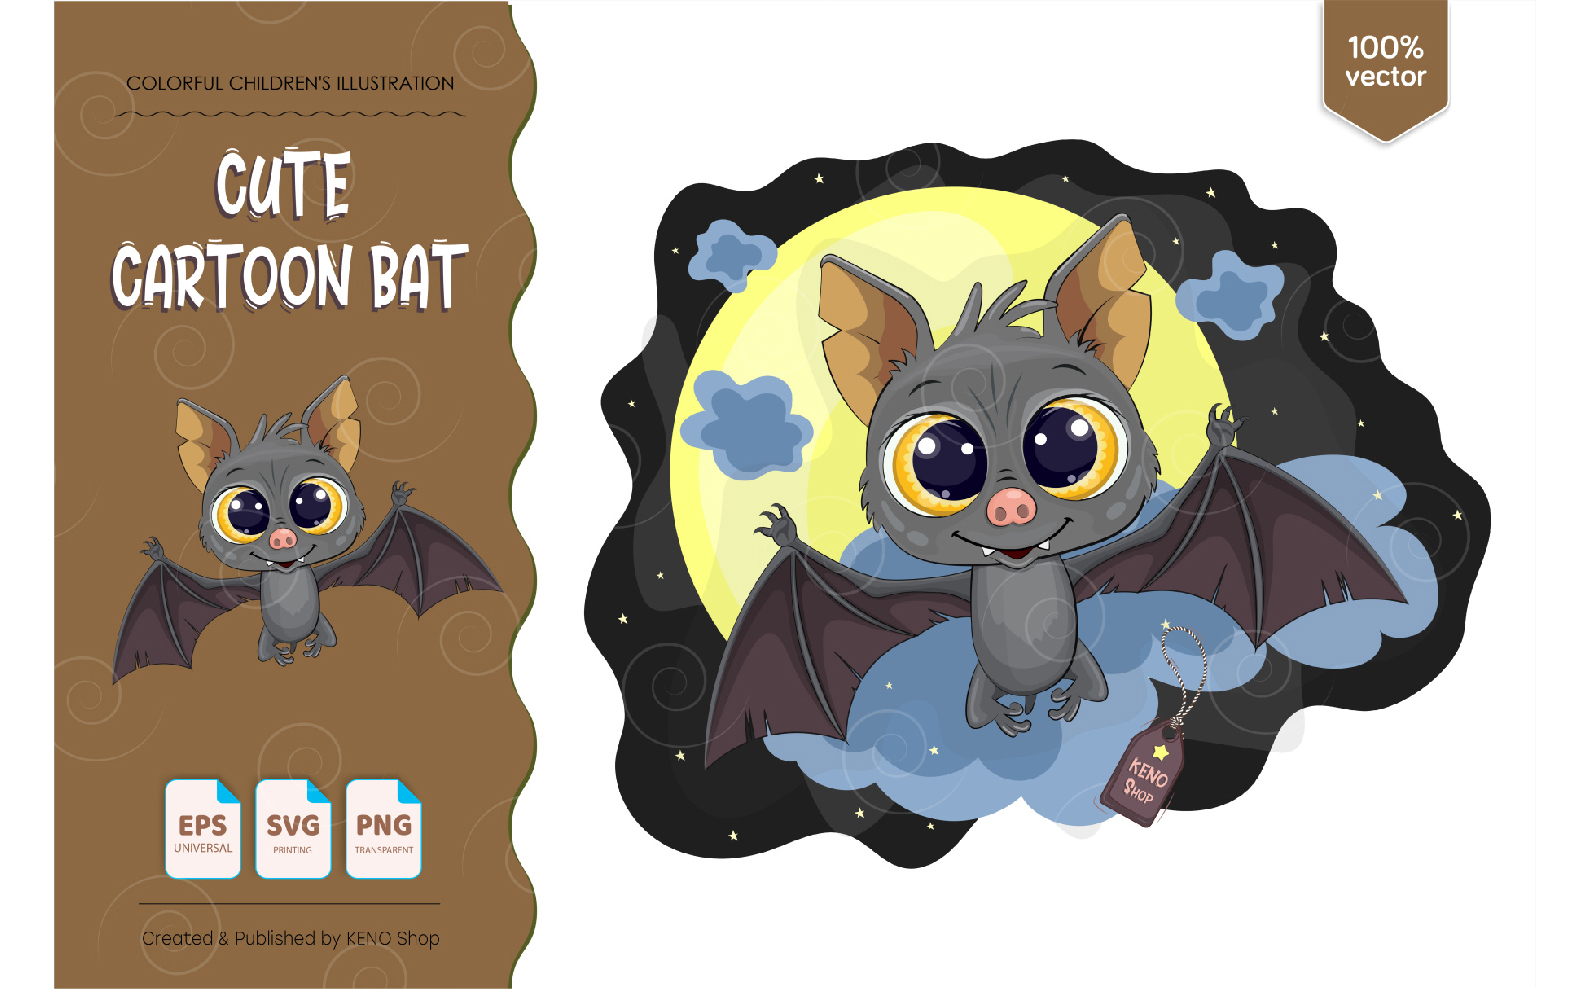 Cute Cartoon Bat - Vector Image